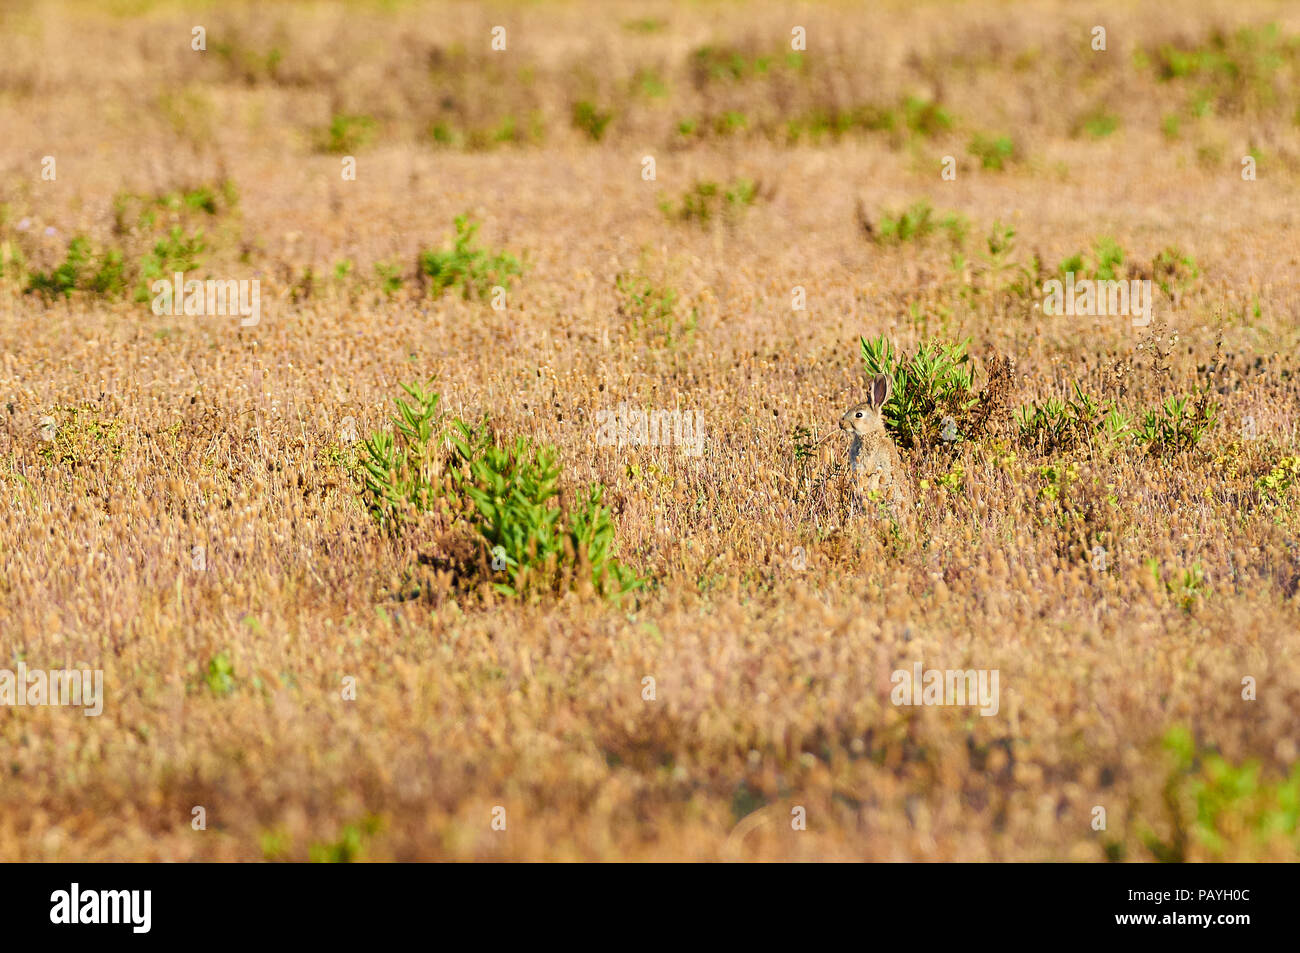 Lapin européen (Oryctolagus cuniculus) entouré de plantain méditerranéen en fleurs (Plantago lagopus) (Parc naturel de ses Salines, Formentera, Espagne) Banque D'Images